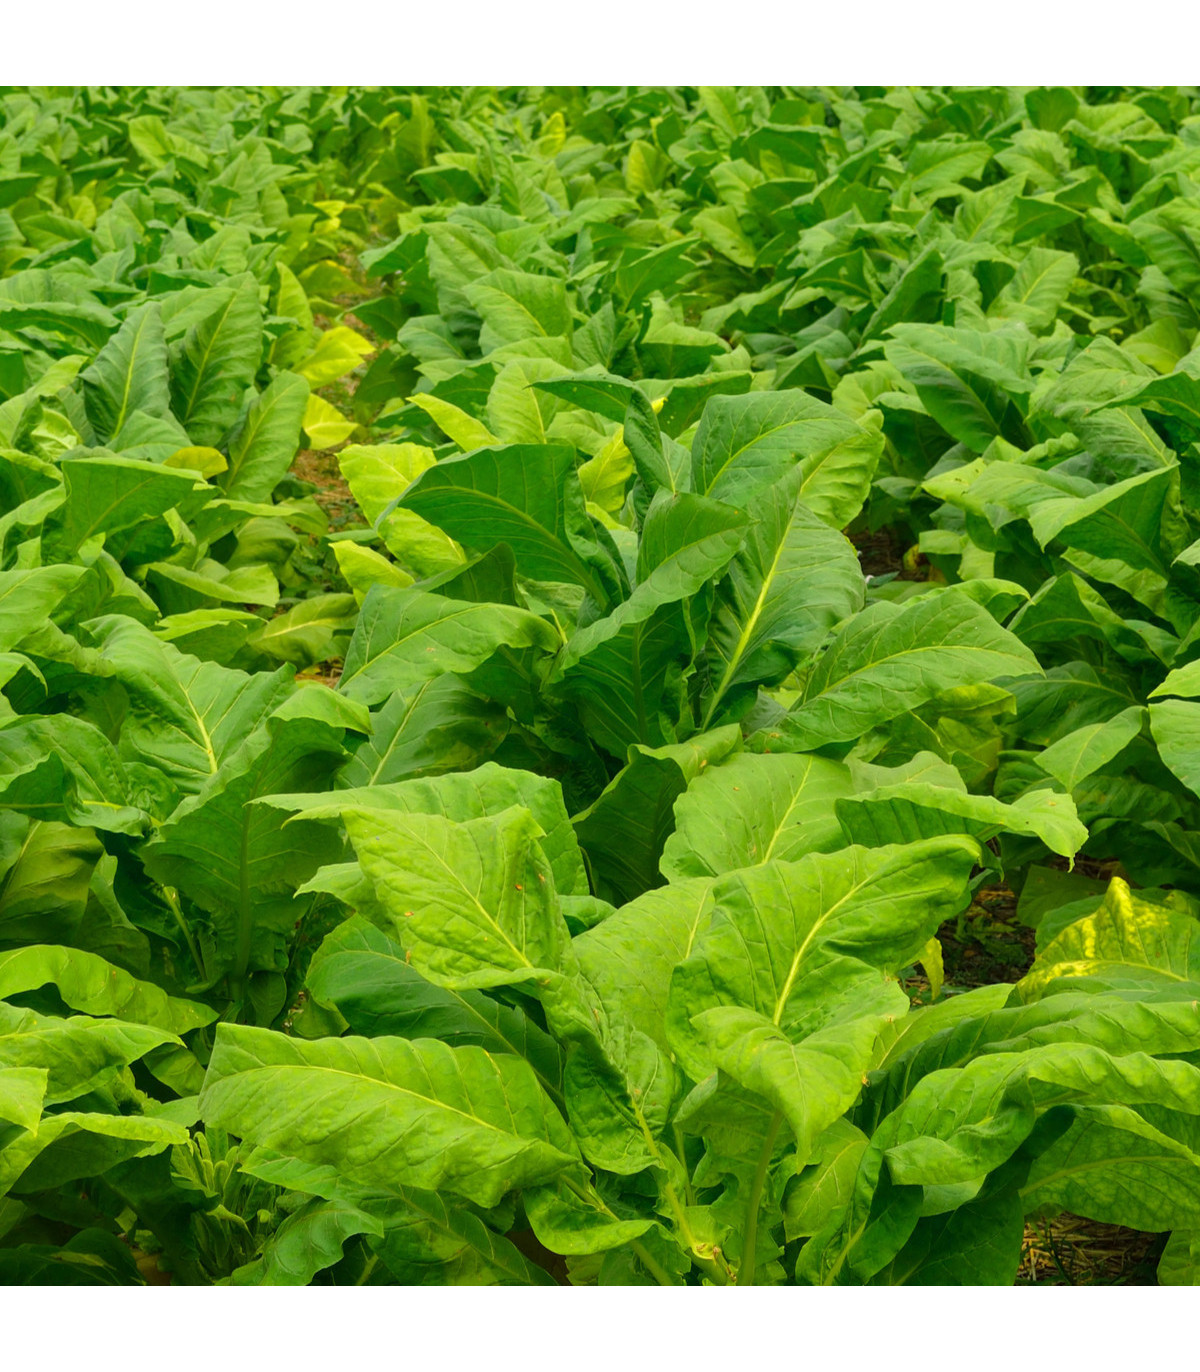 Tabák Burley - Nicotiana tabacum - osivo tabáku - 20 ks